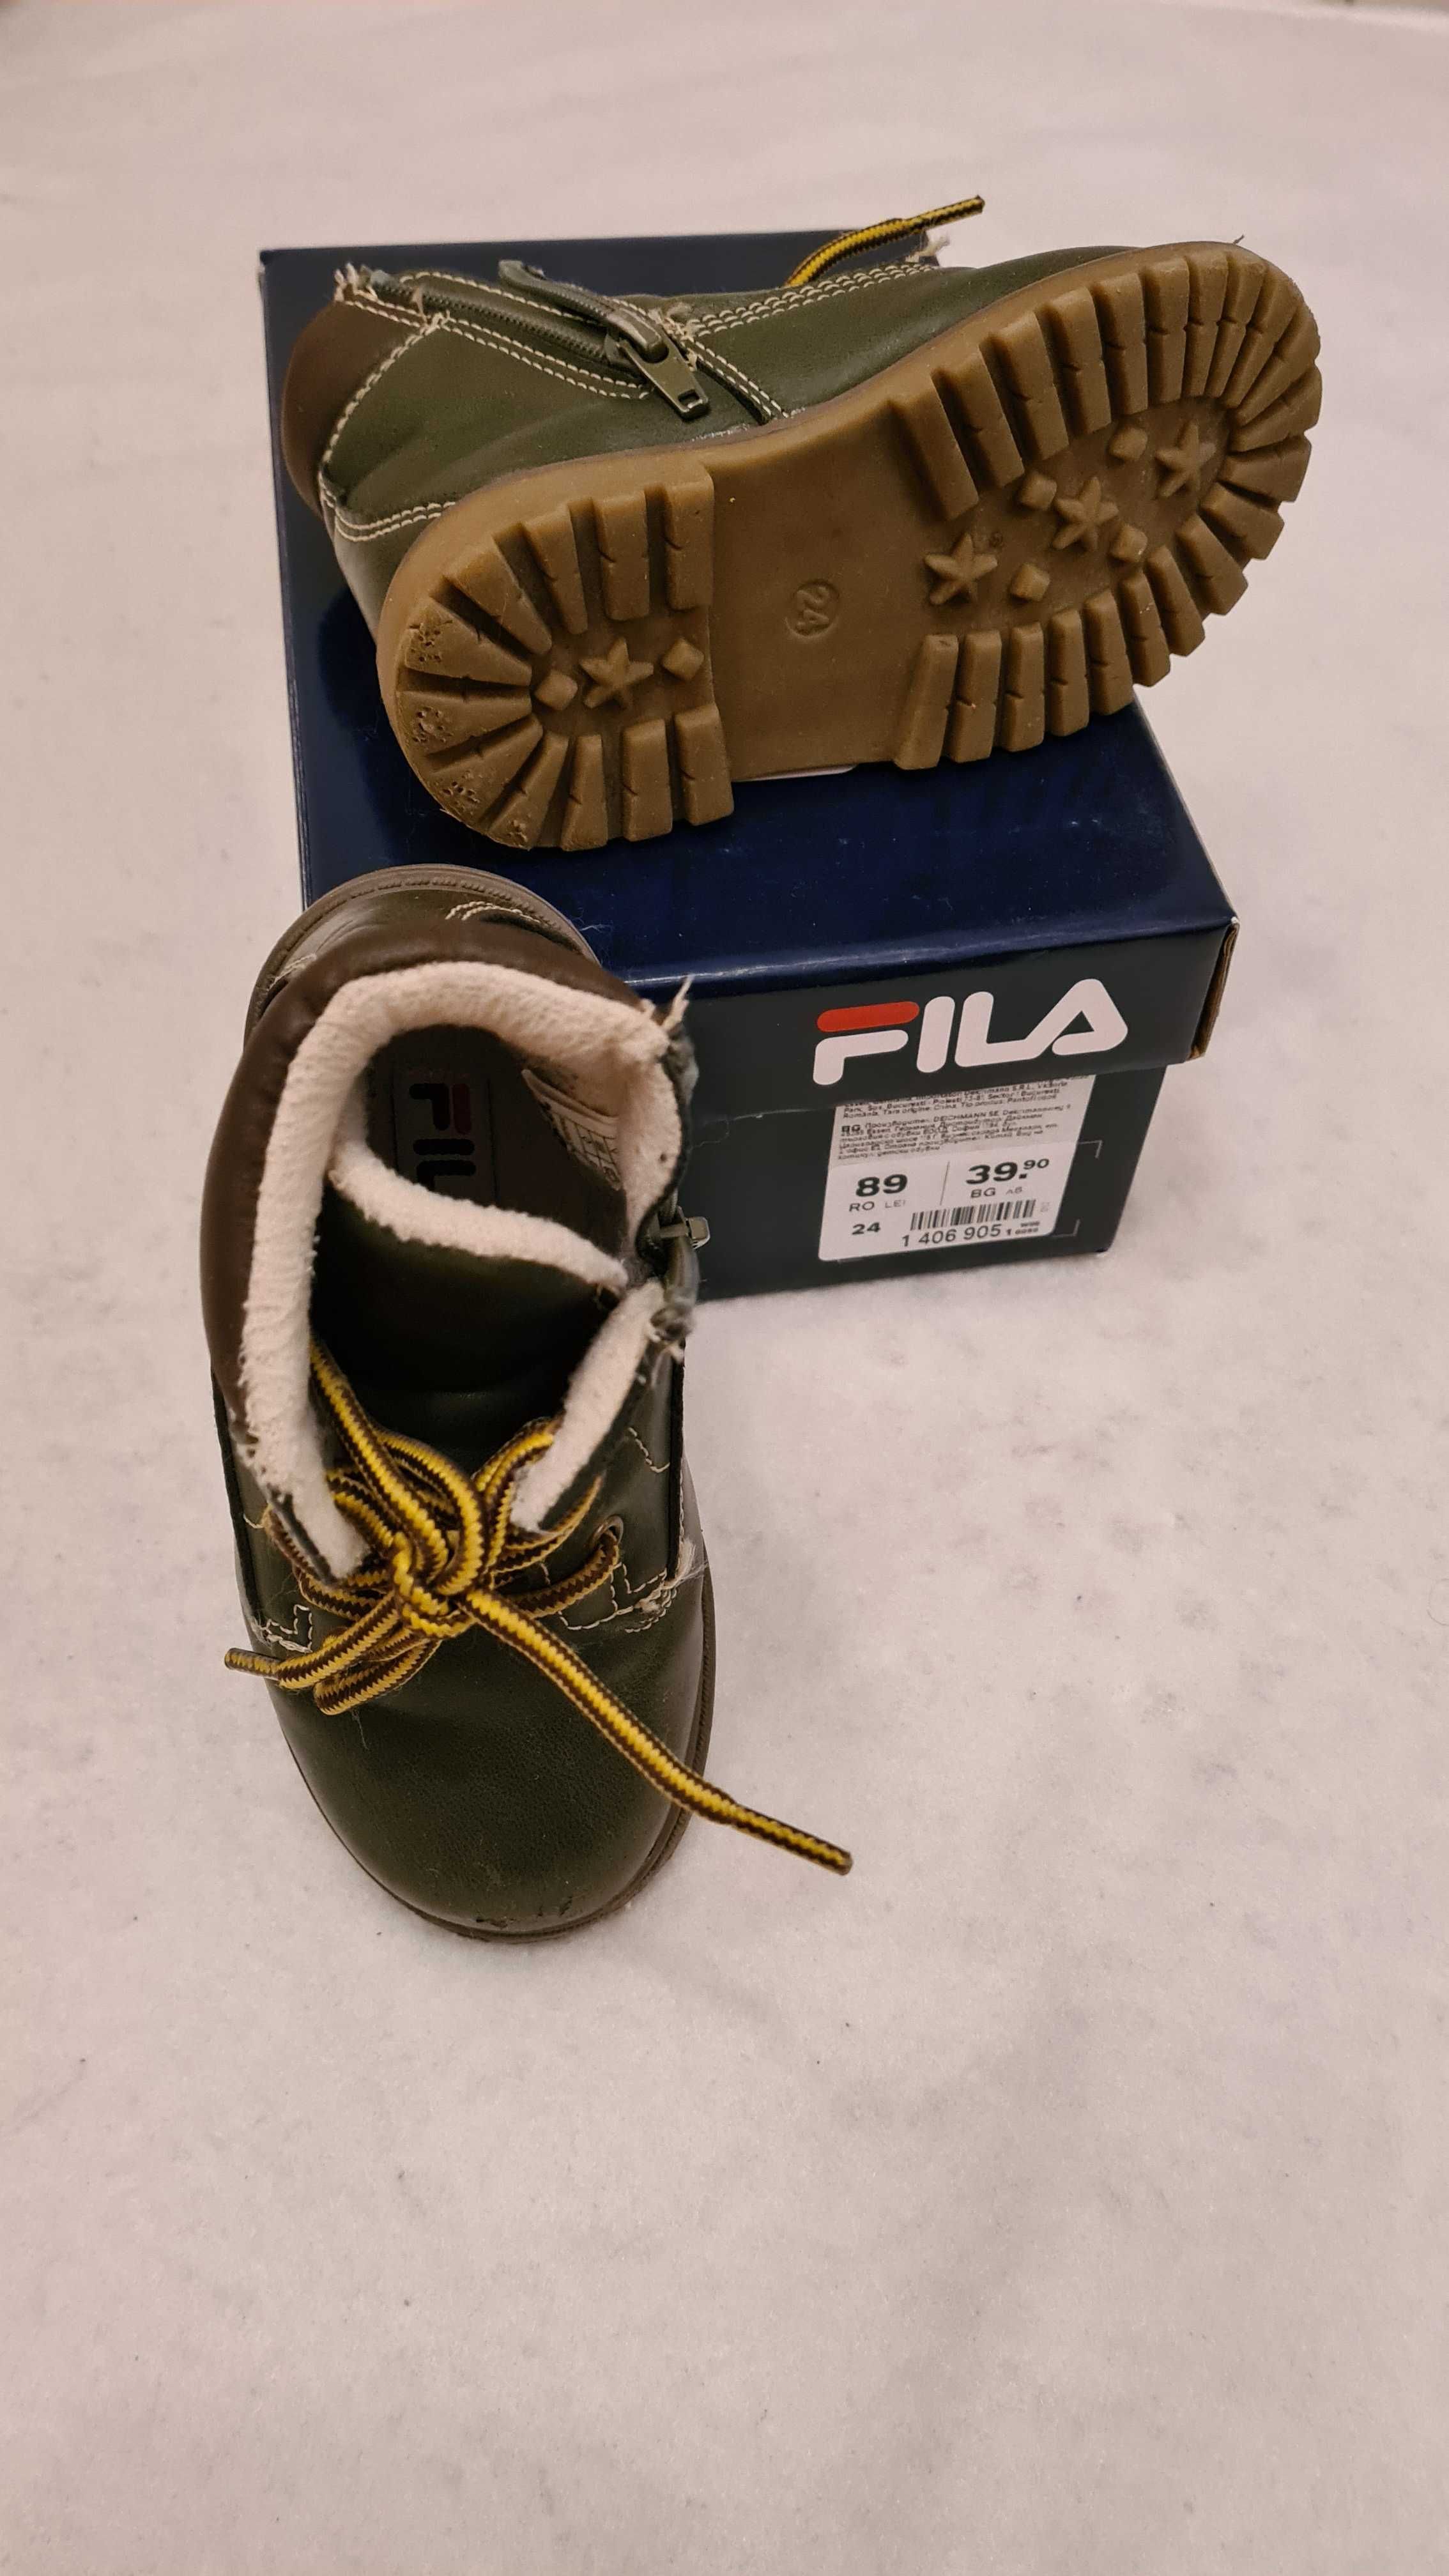 детски обувки пантофки сандали апрески за момче колекция от различни №